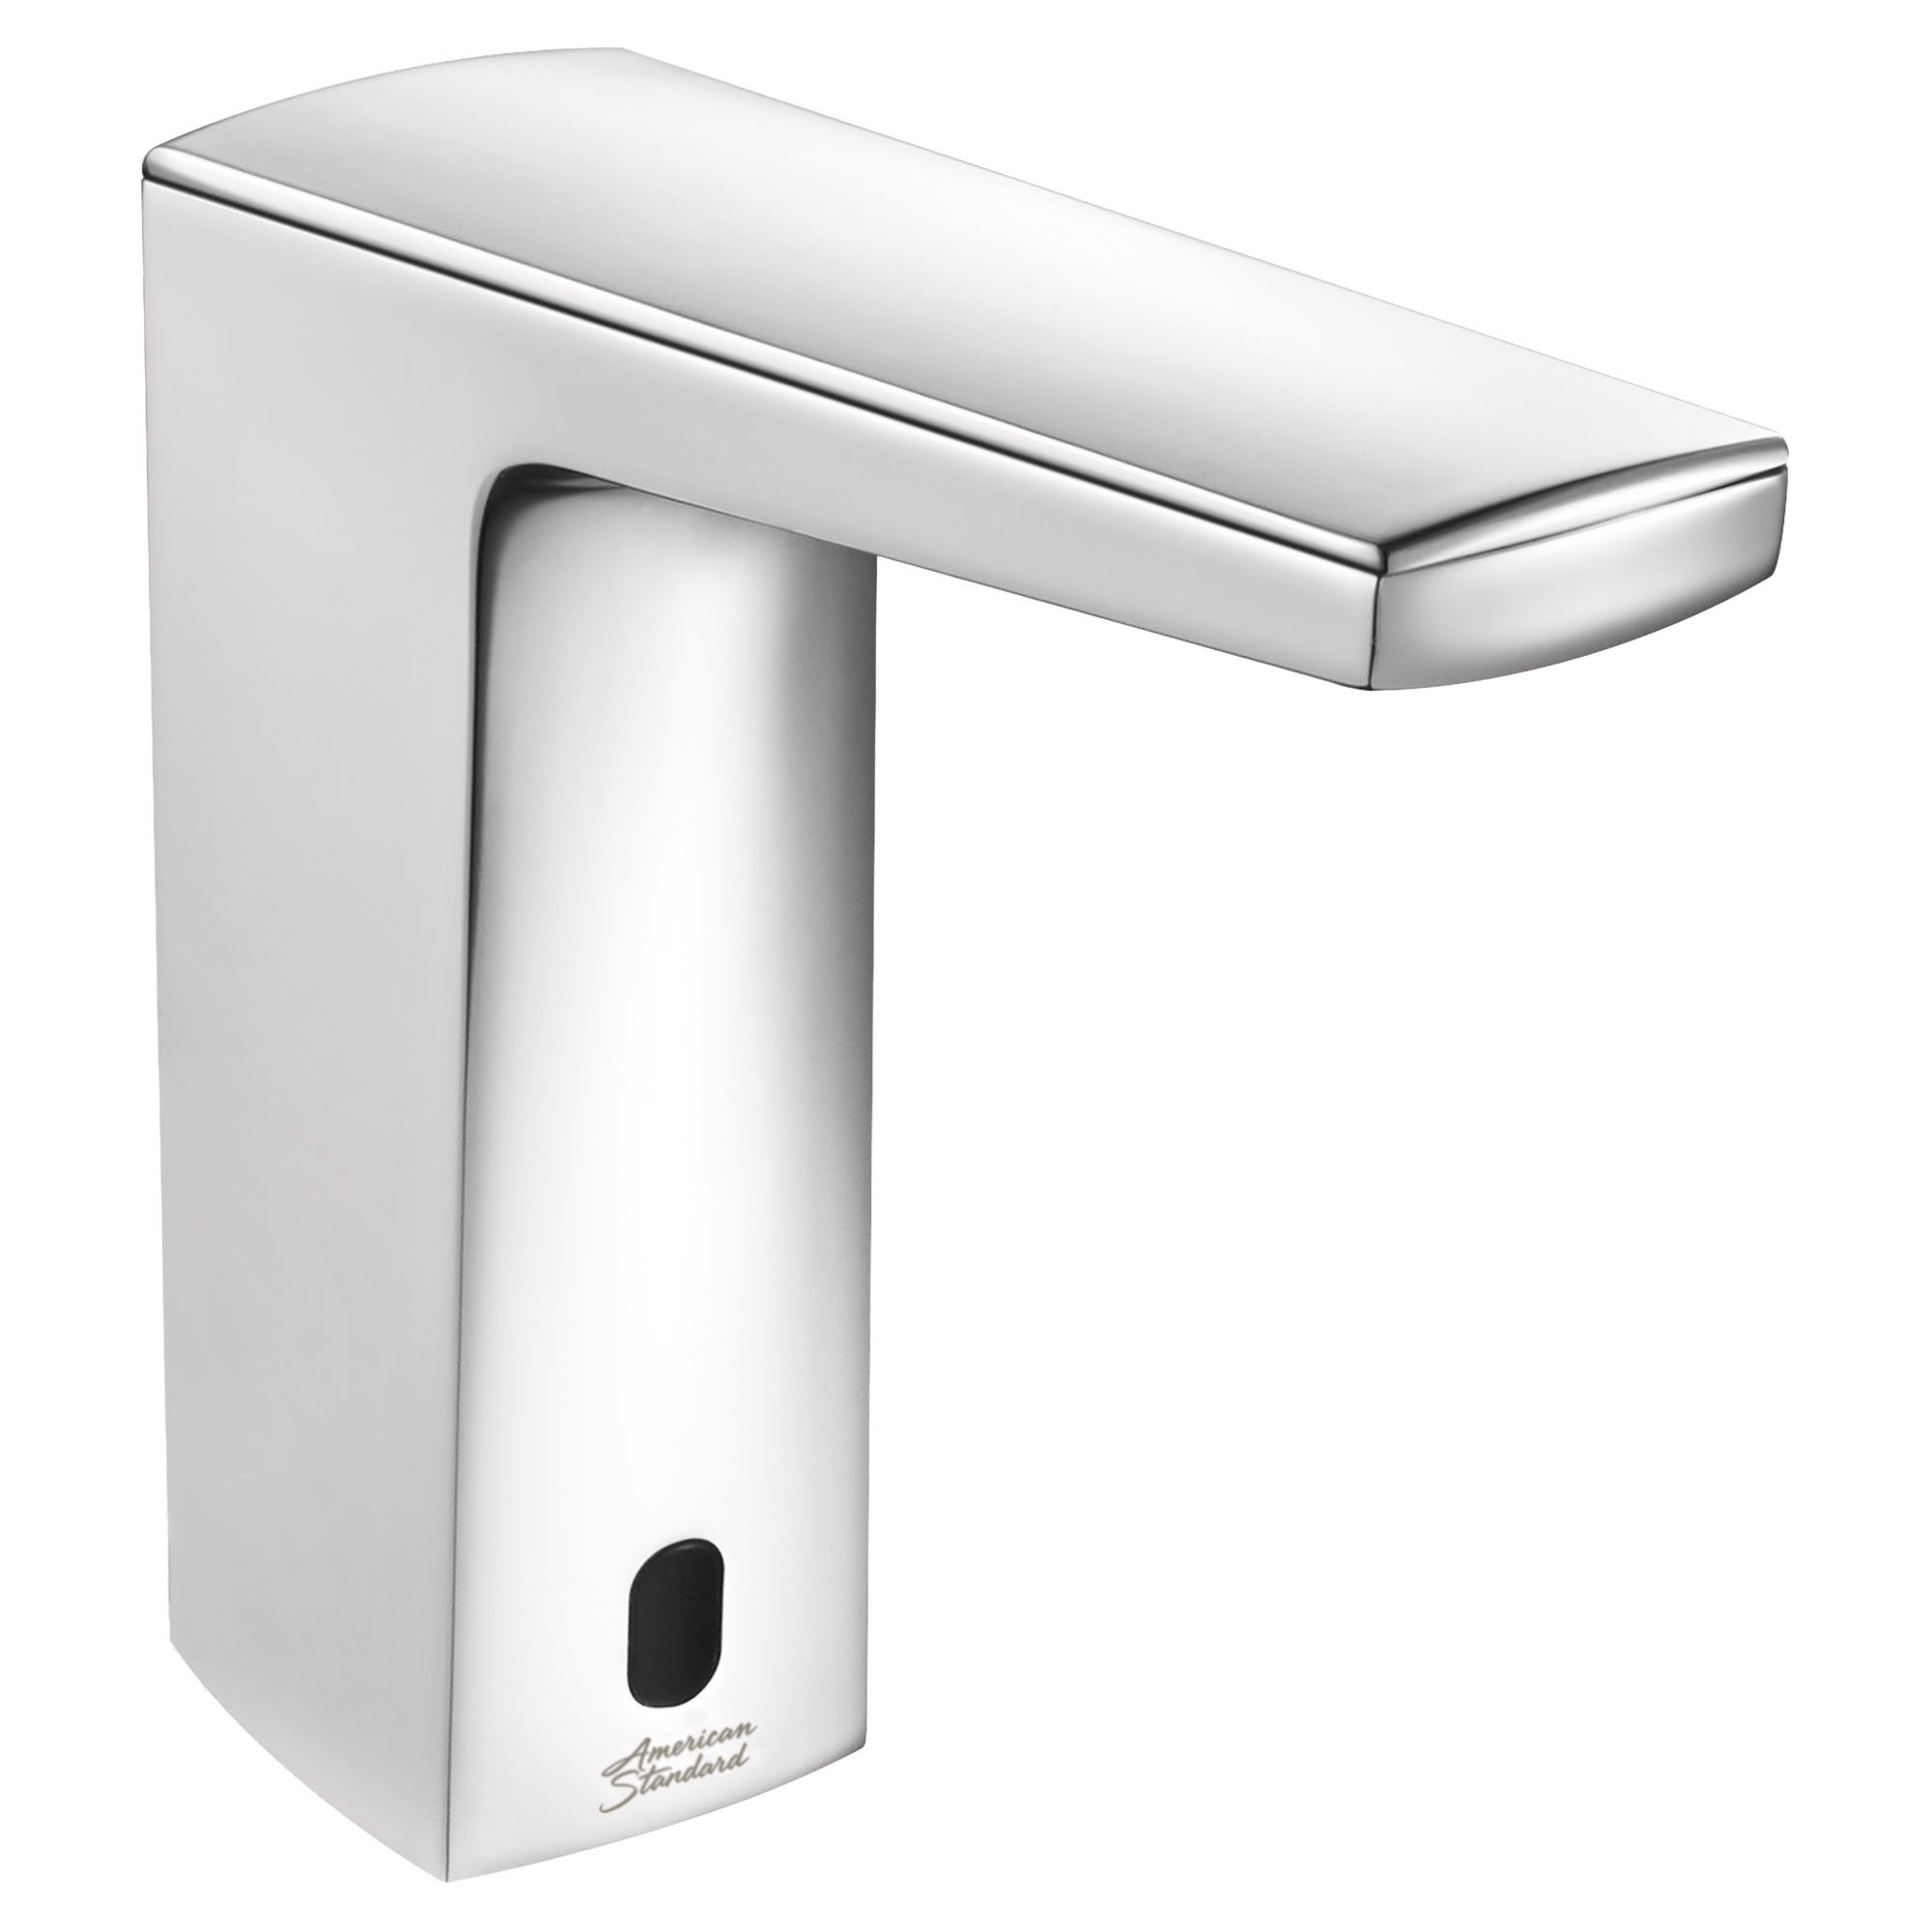 Paradigm Selectronic - robinet sans contact, alimentation à pile avec butée de sécurité SmarTherm + ADM, 1,5 gpm/5,7 l/min